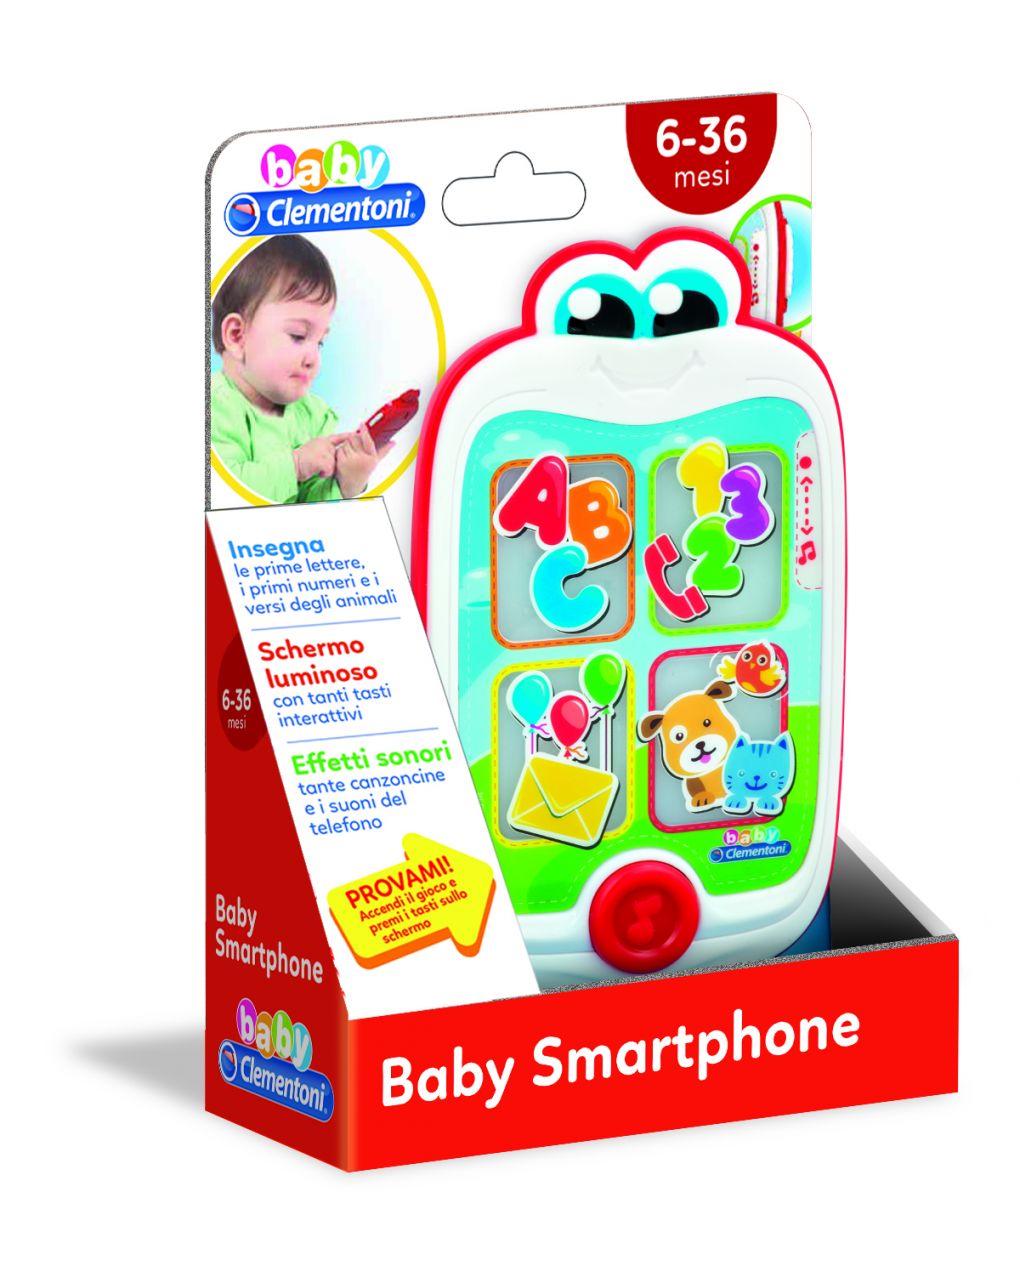 Baby clementoni - baby smartphone - Clementoni